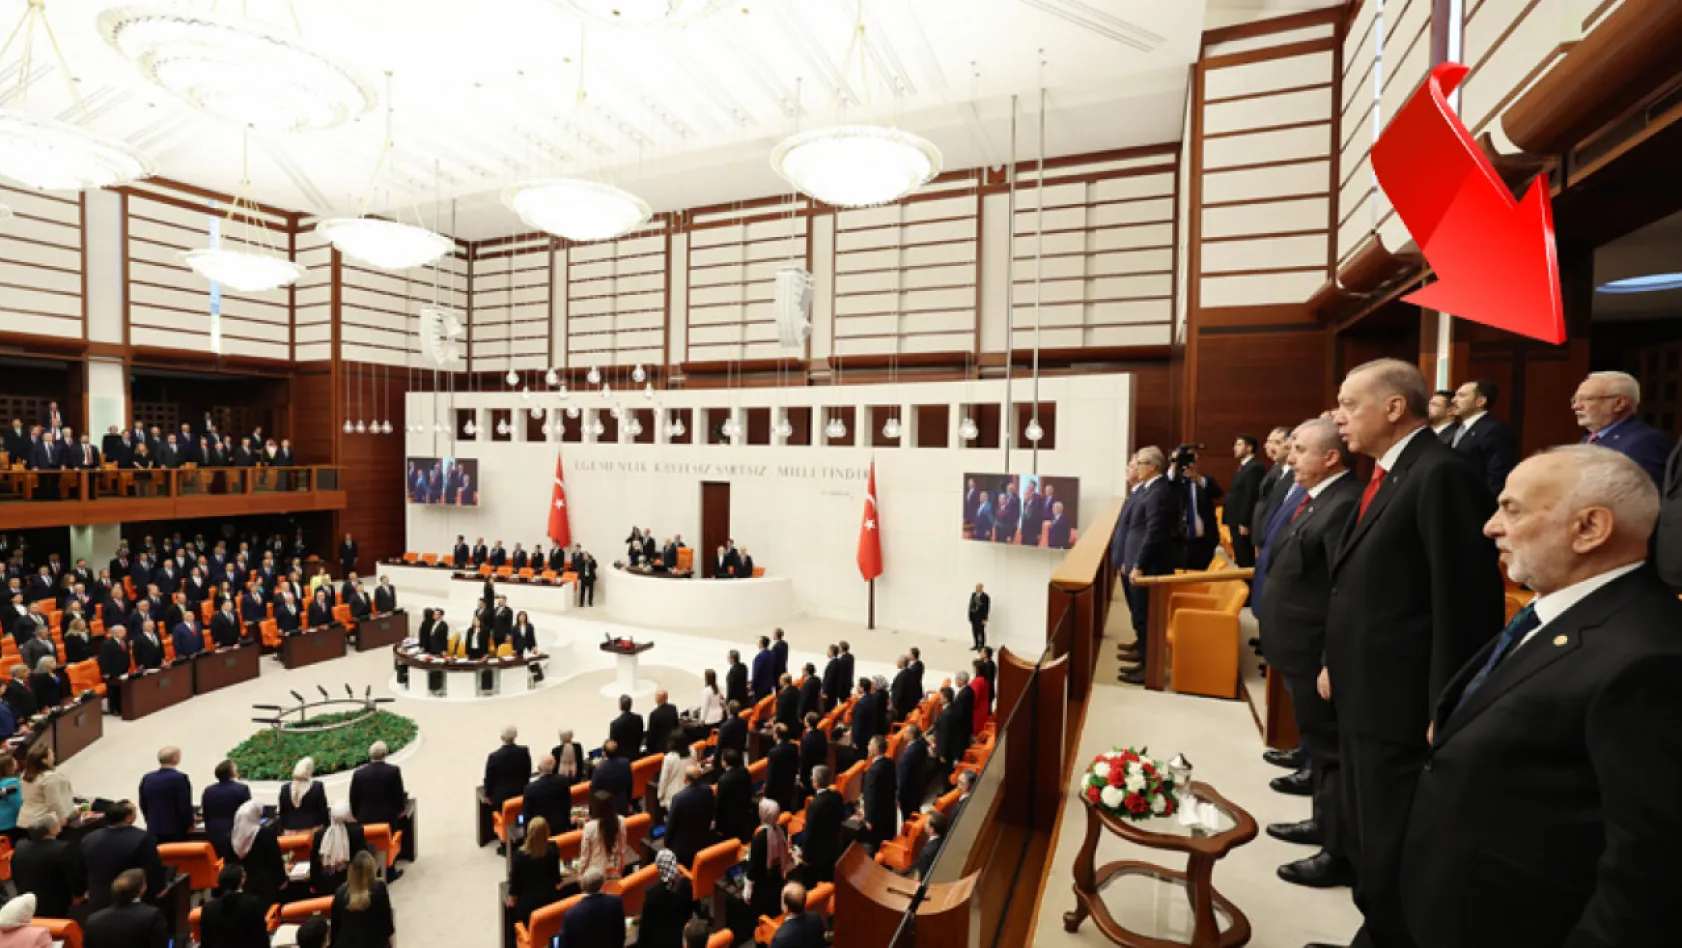 Elitaş, Meclis'te Erdoğan'ın arkasında görüldü! Yeni görevi ne olacak?